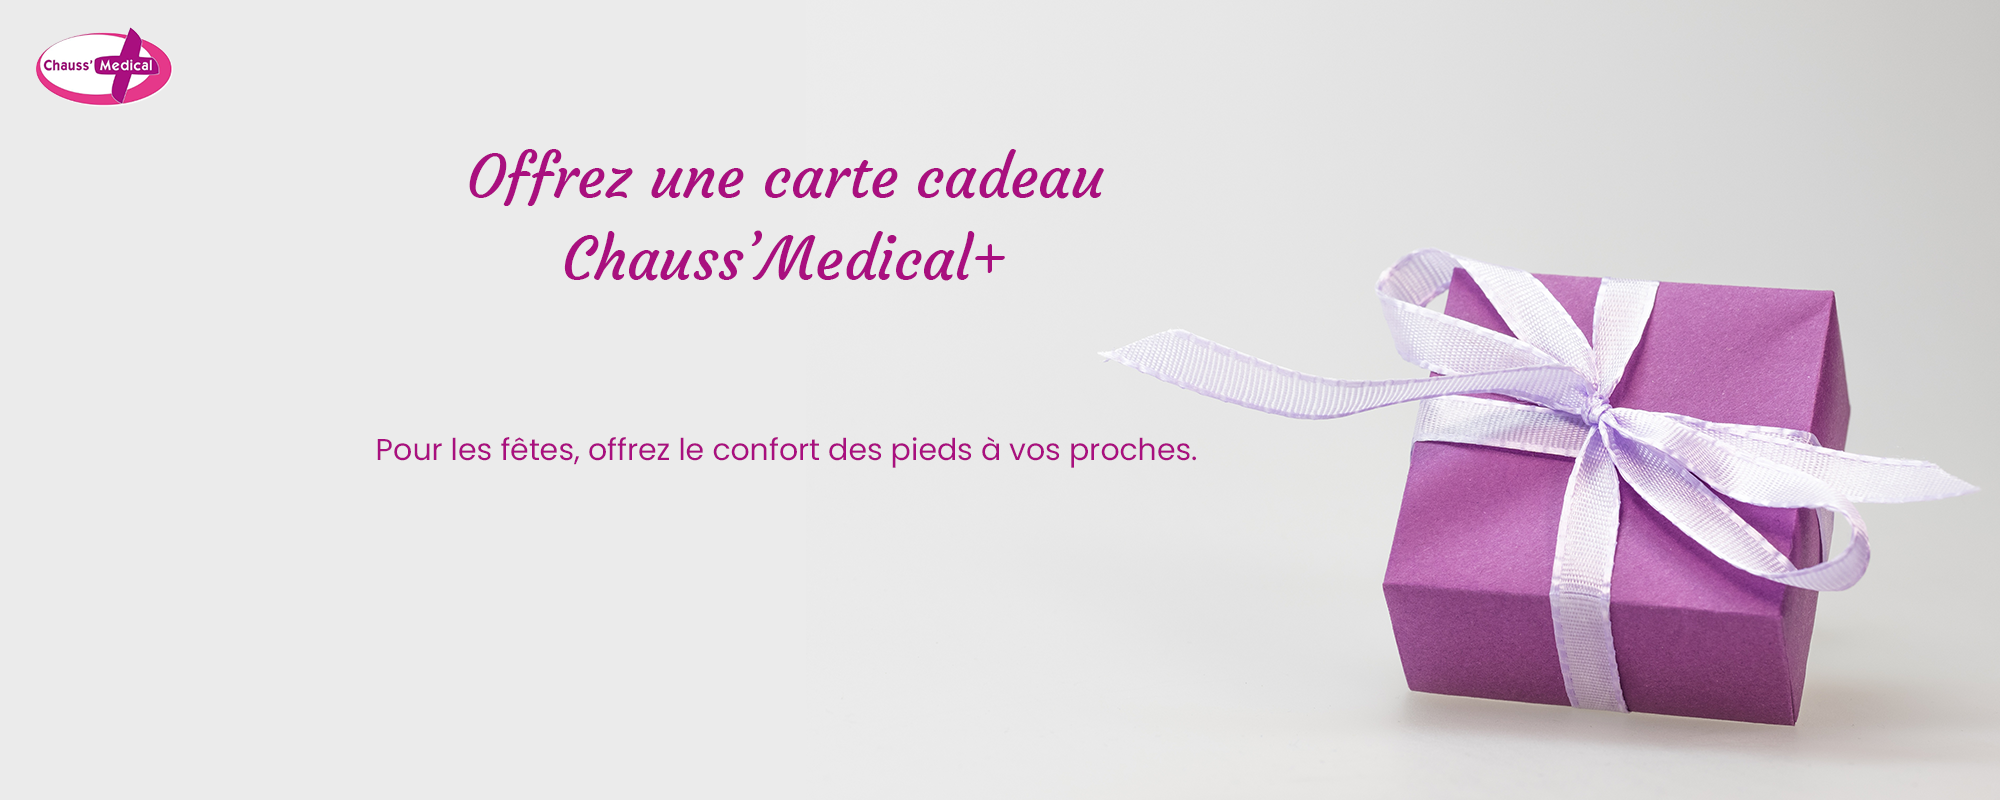 Offrez une carte cadeau Chauss'Medical+